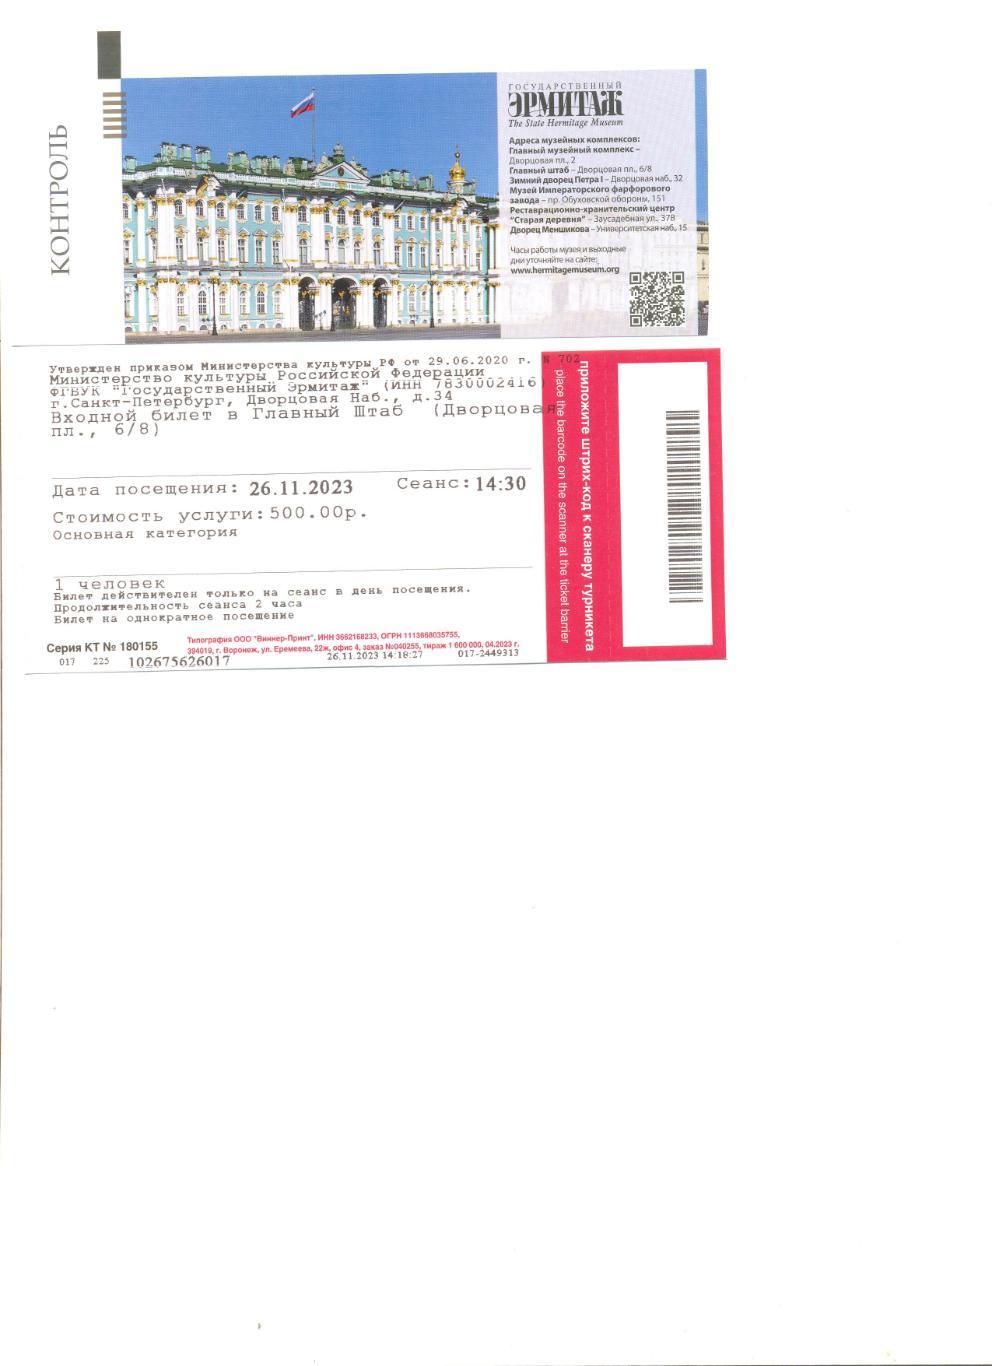 Билет в Эрмитаж (Главный штаб) Санкт-Петербург(с контролем).